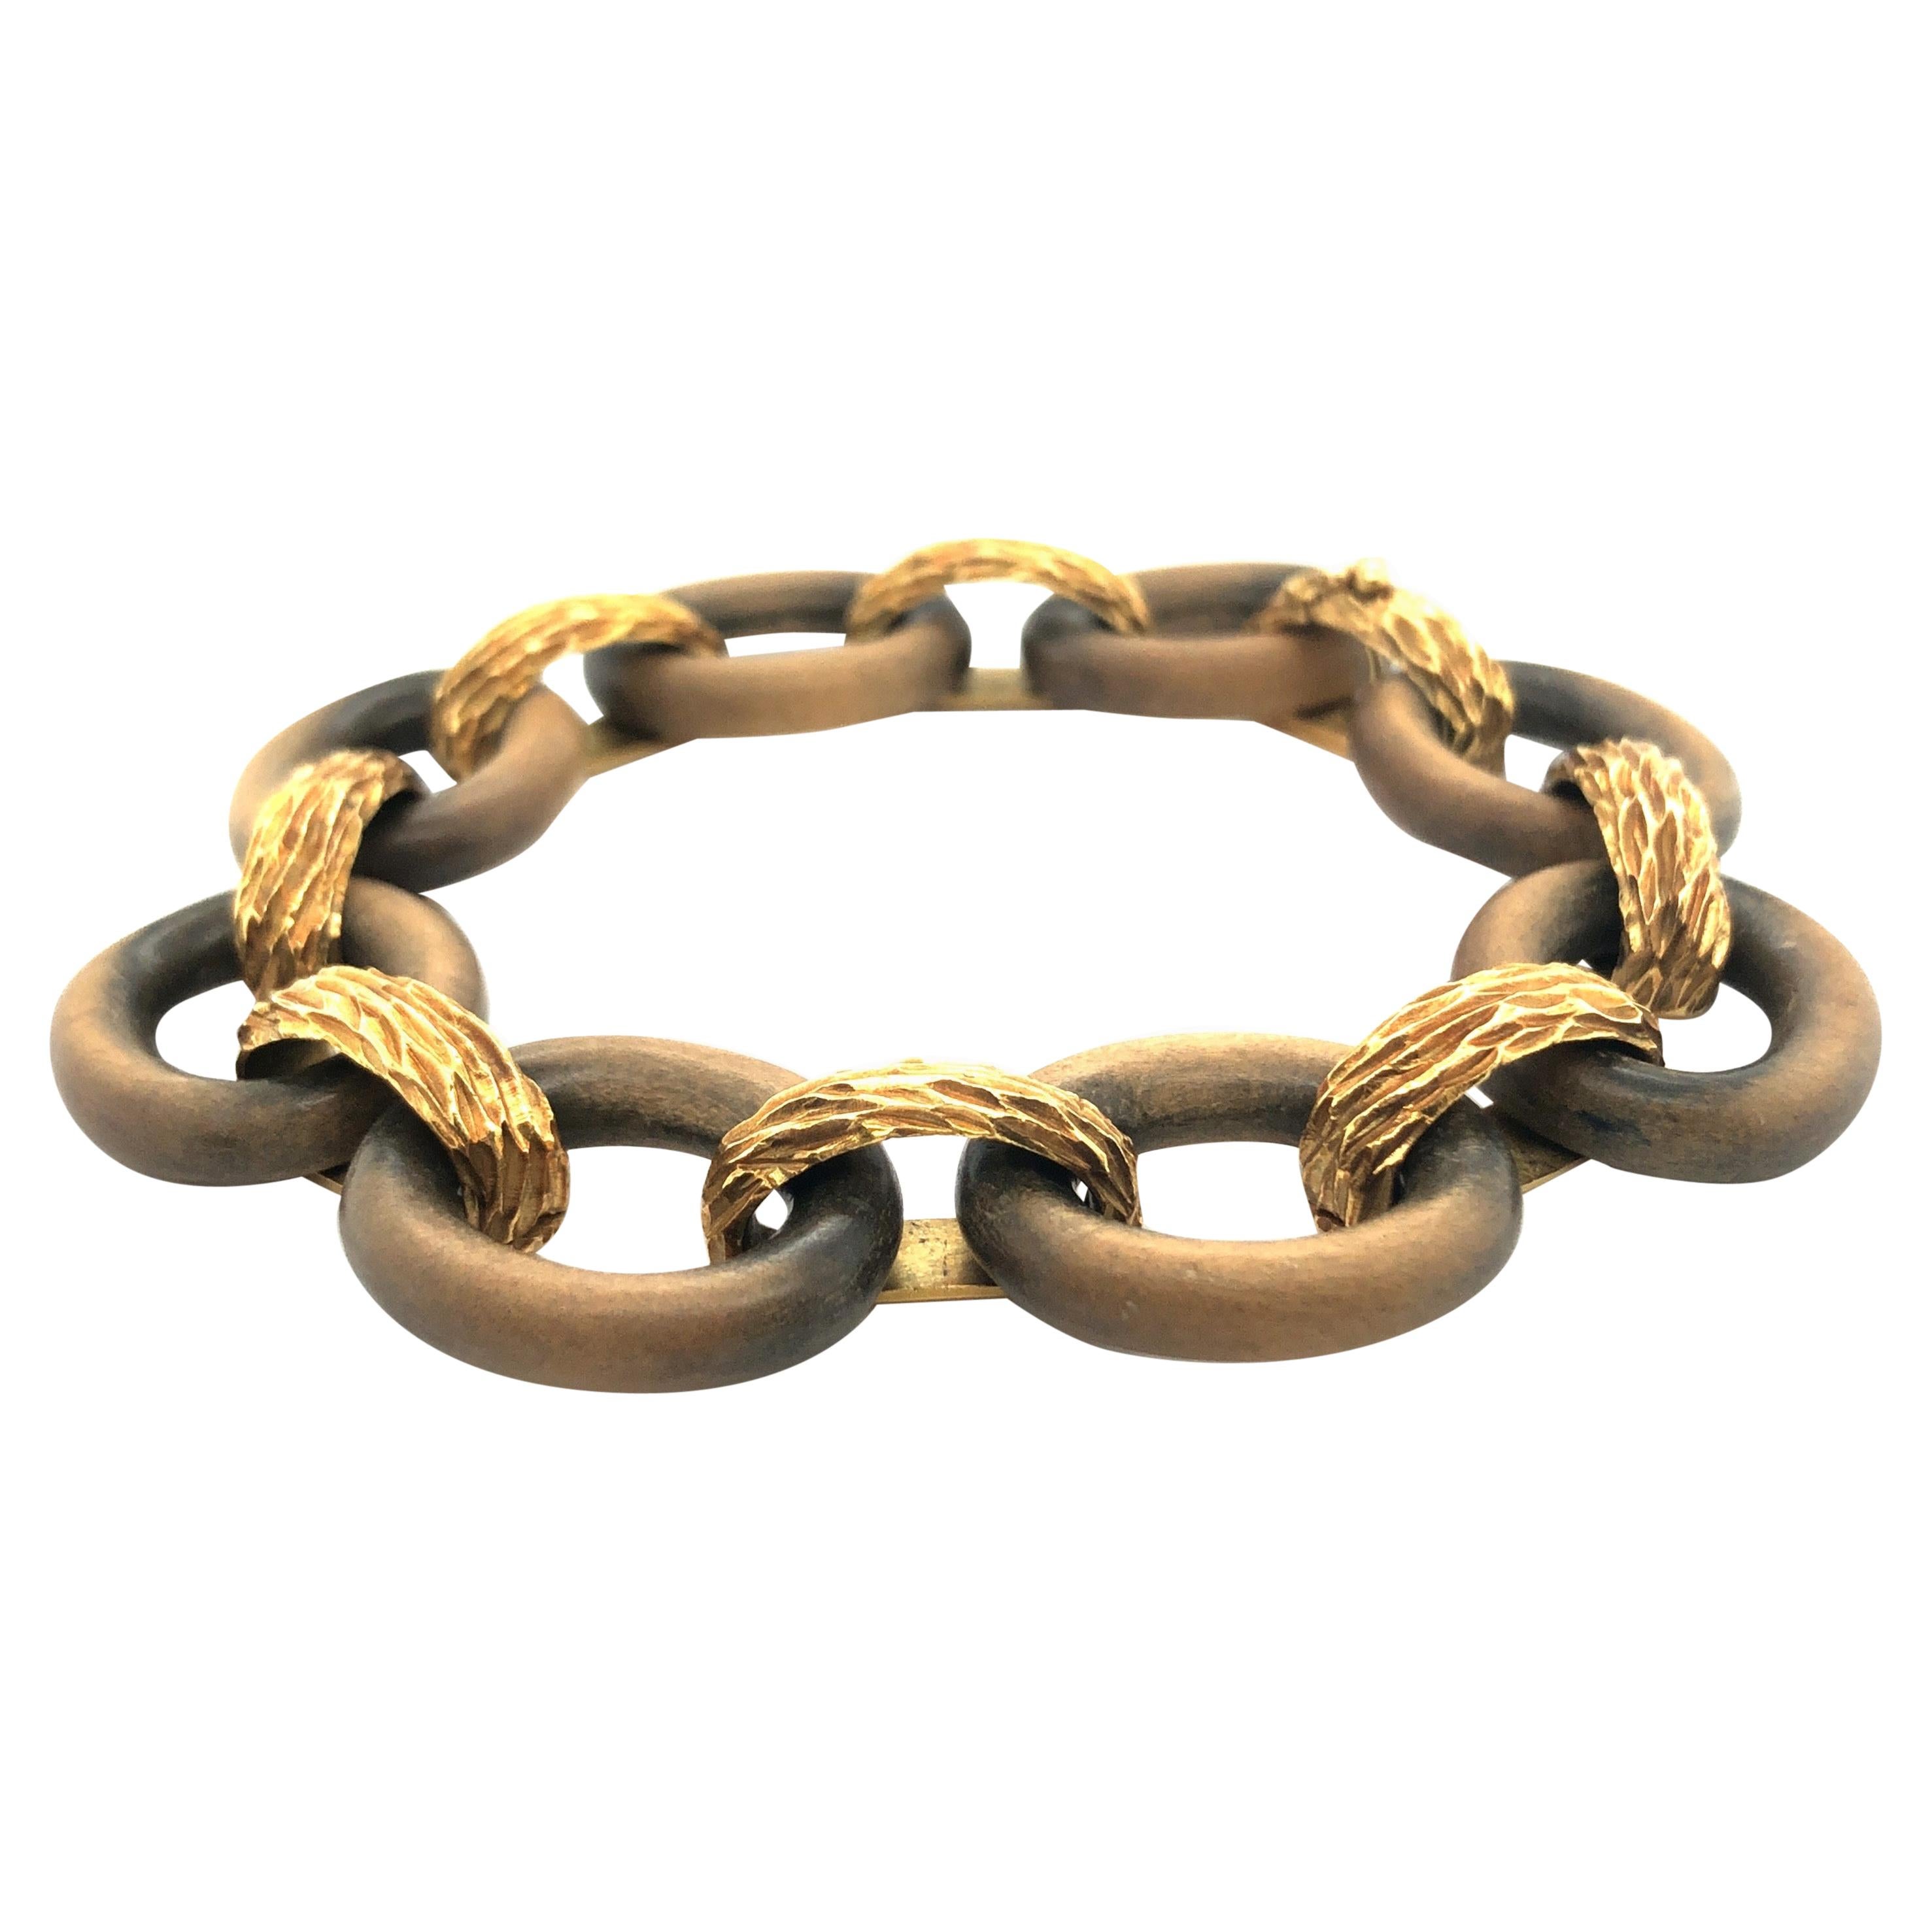 vintage-Armband aus 18 Karat Gelbgold und Sandelholz von René Boivin, bestehend aus 8 ovalen Ringen aus poliertem Sandelholz, die durch strukturierte Gelbgoldglieder miteinander verbunden sind. Das Armband wird mit einer sicheren Schließe